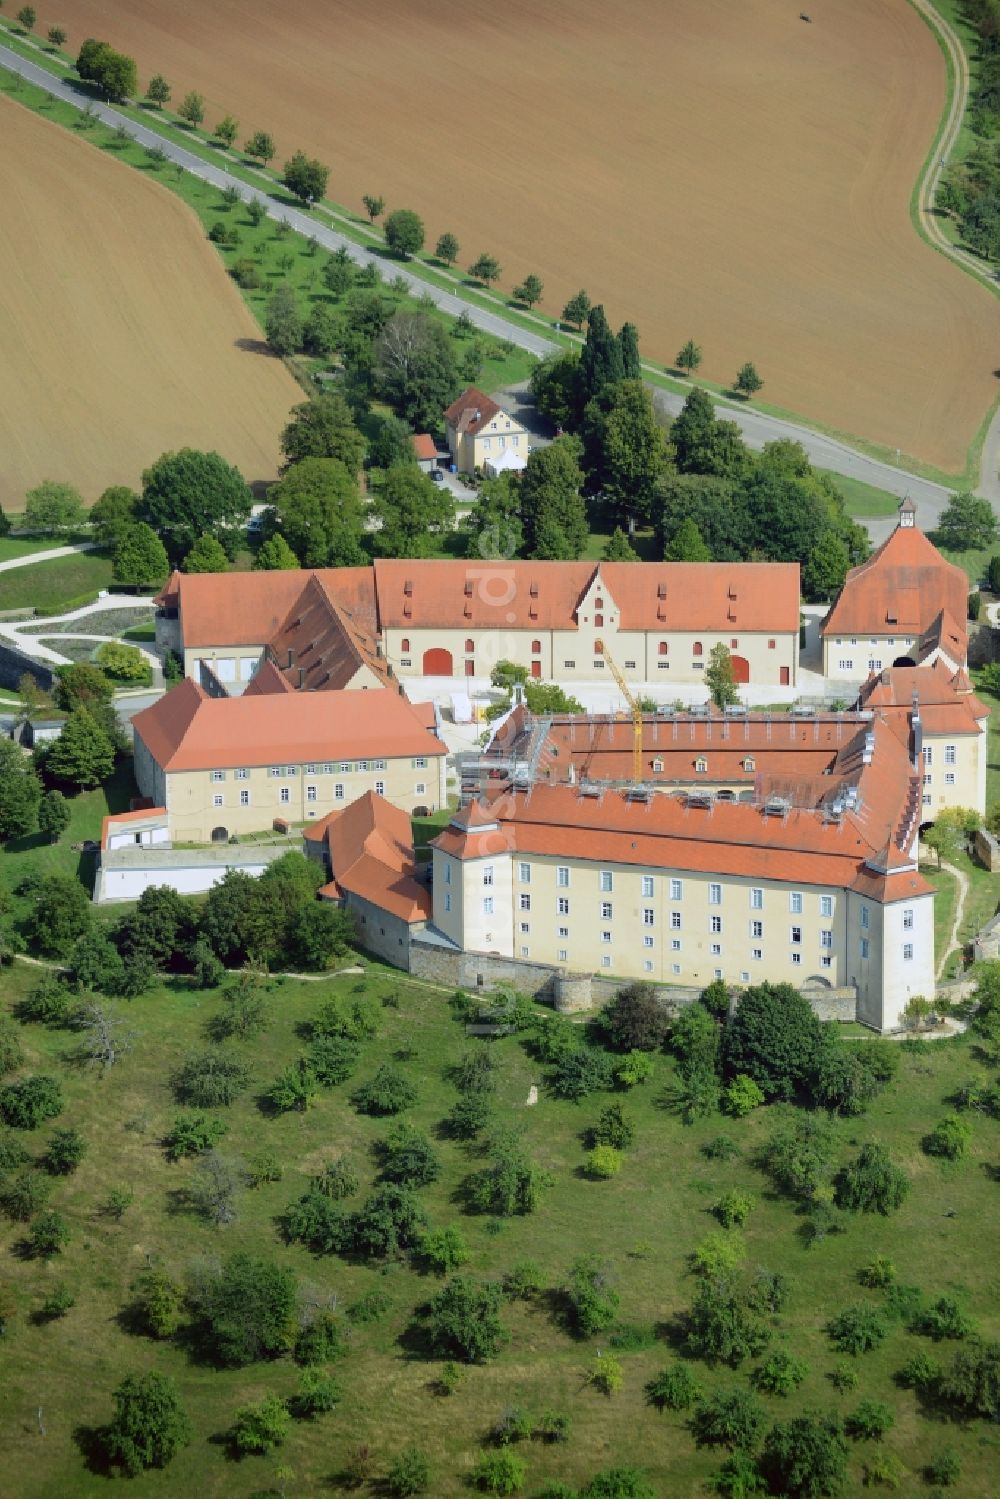 Luftbild Ellwangen (Jagst) - Burganlage des Schloss Schloß ob Ellwangen in Ellwangen (Jagst) im Bundesland Baden-Württemberg